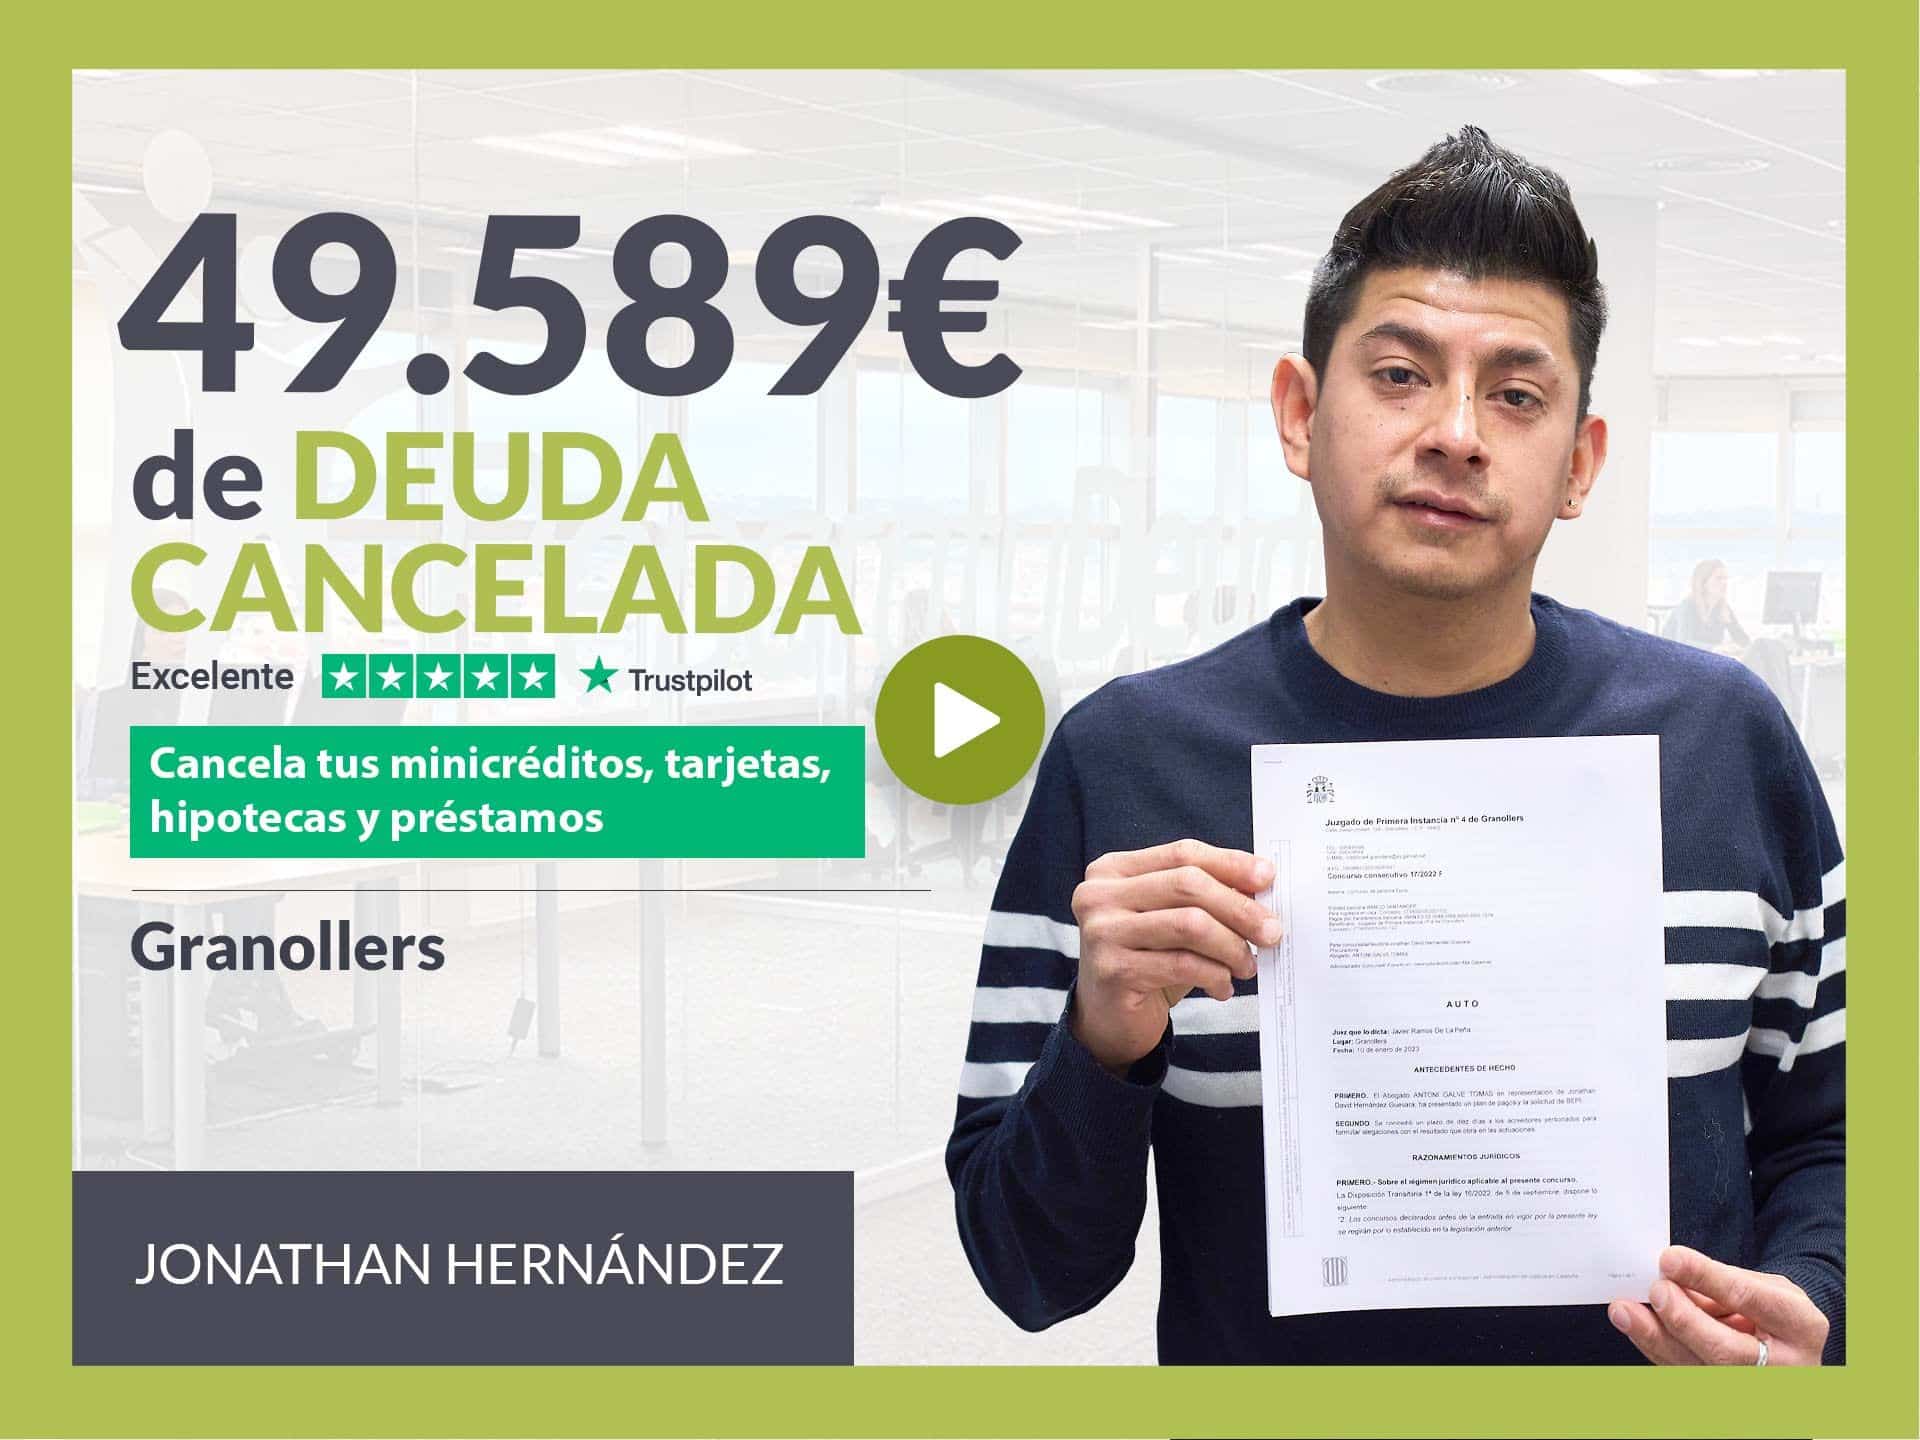 Repara Tu Deuda Abogados Cancela 49.589? En Granollers (Barcelona) Con La Ley De Segunda Oportunidad